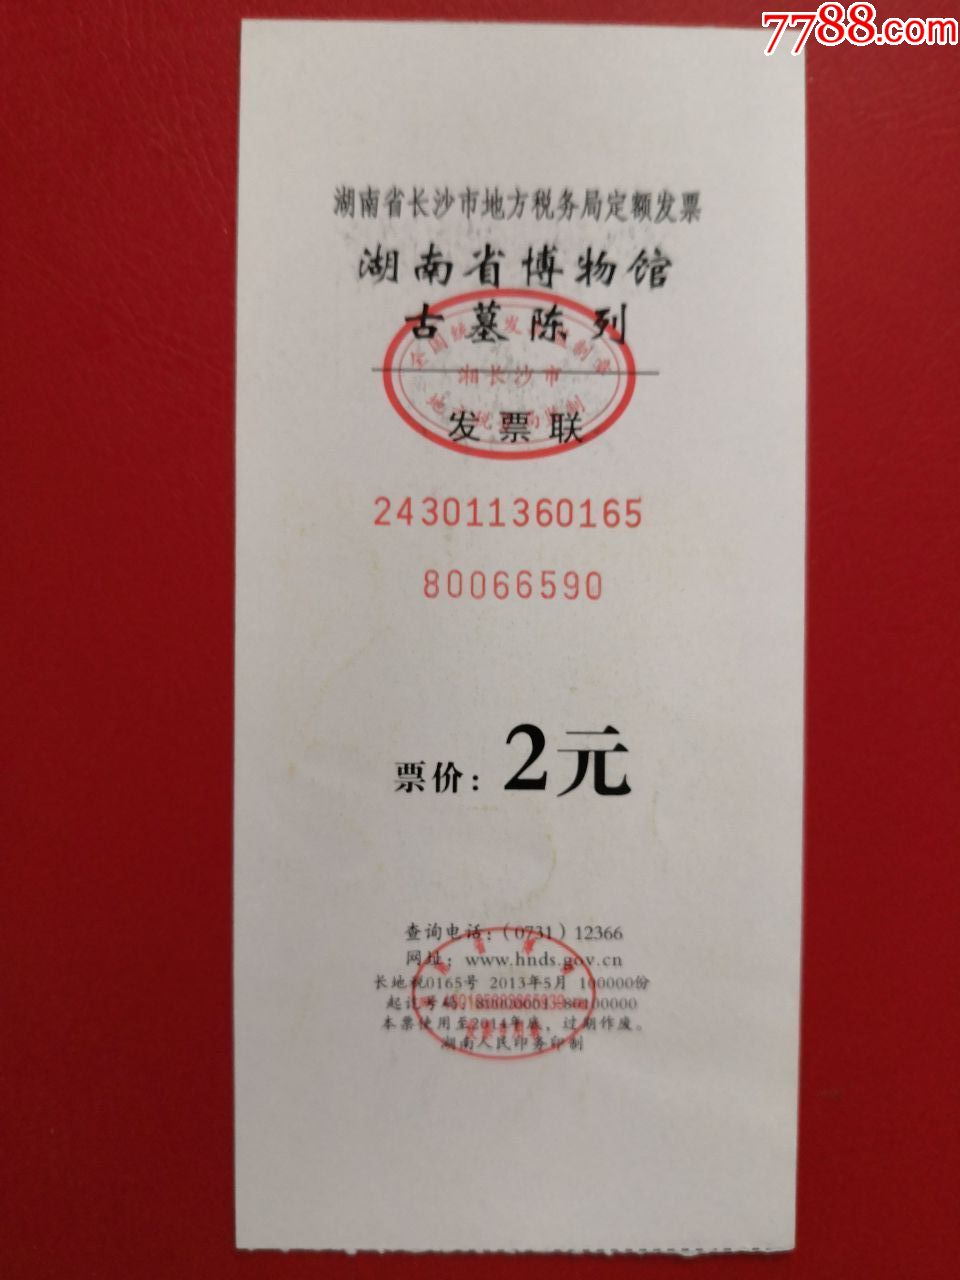 湖南省博物馆50元门票图片